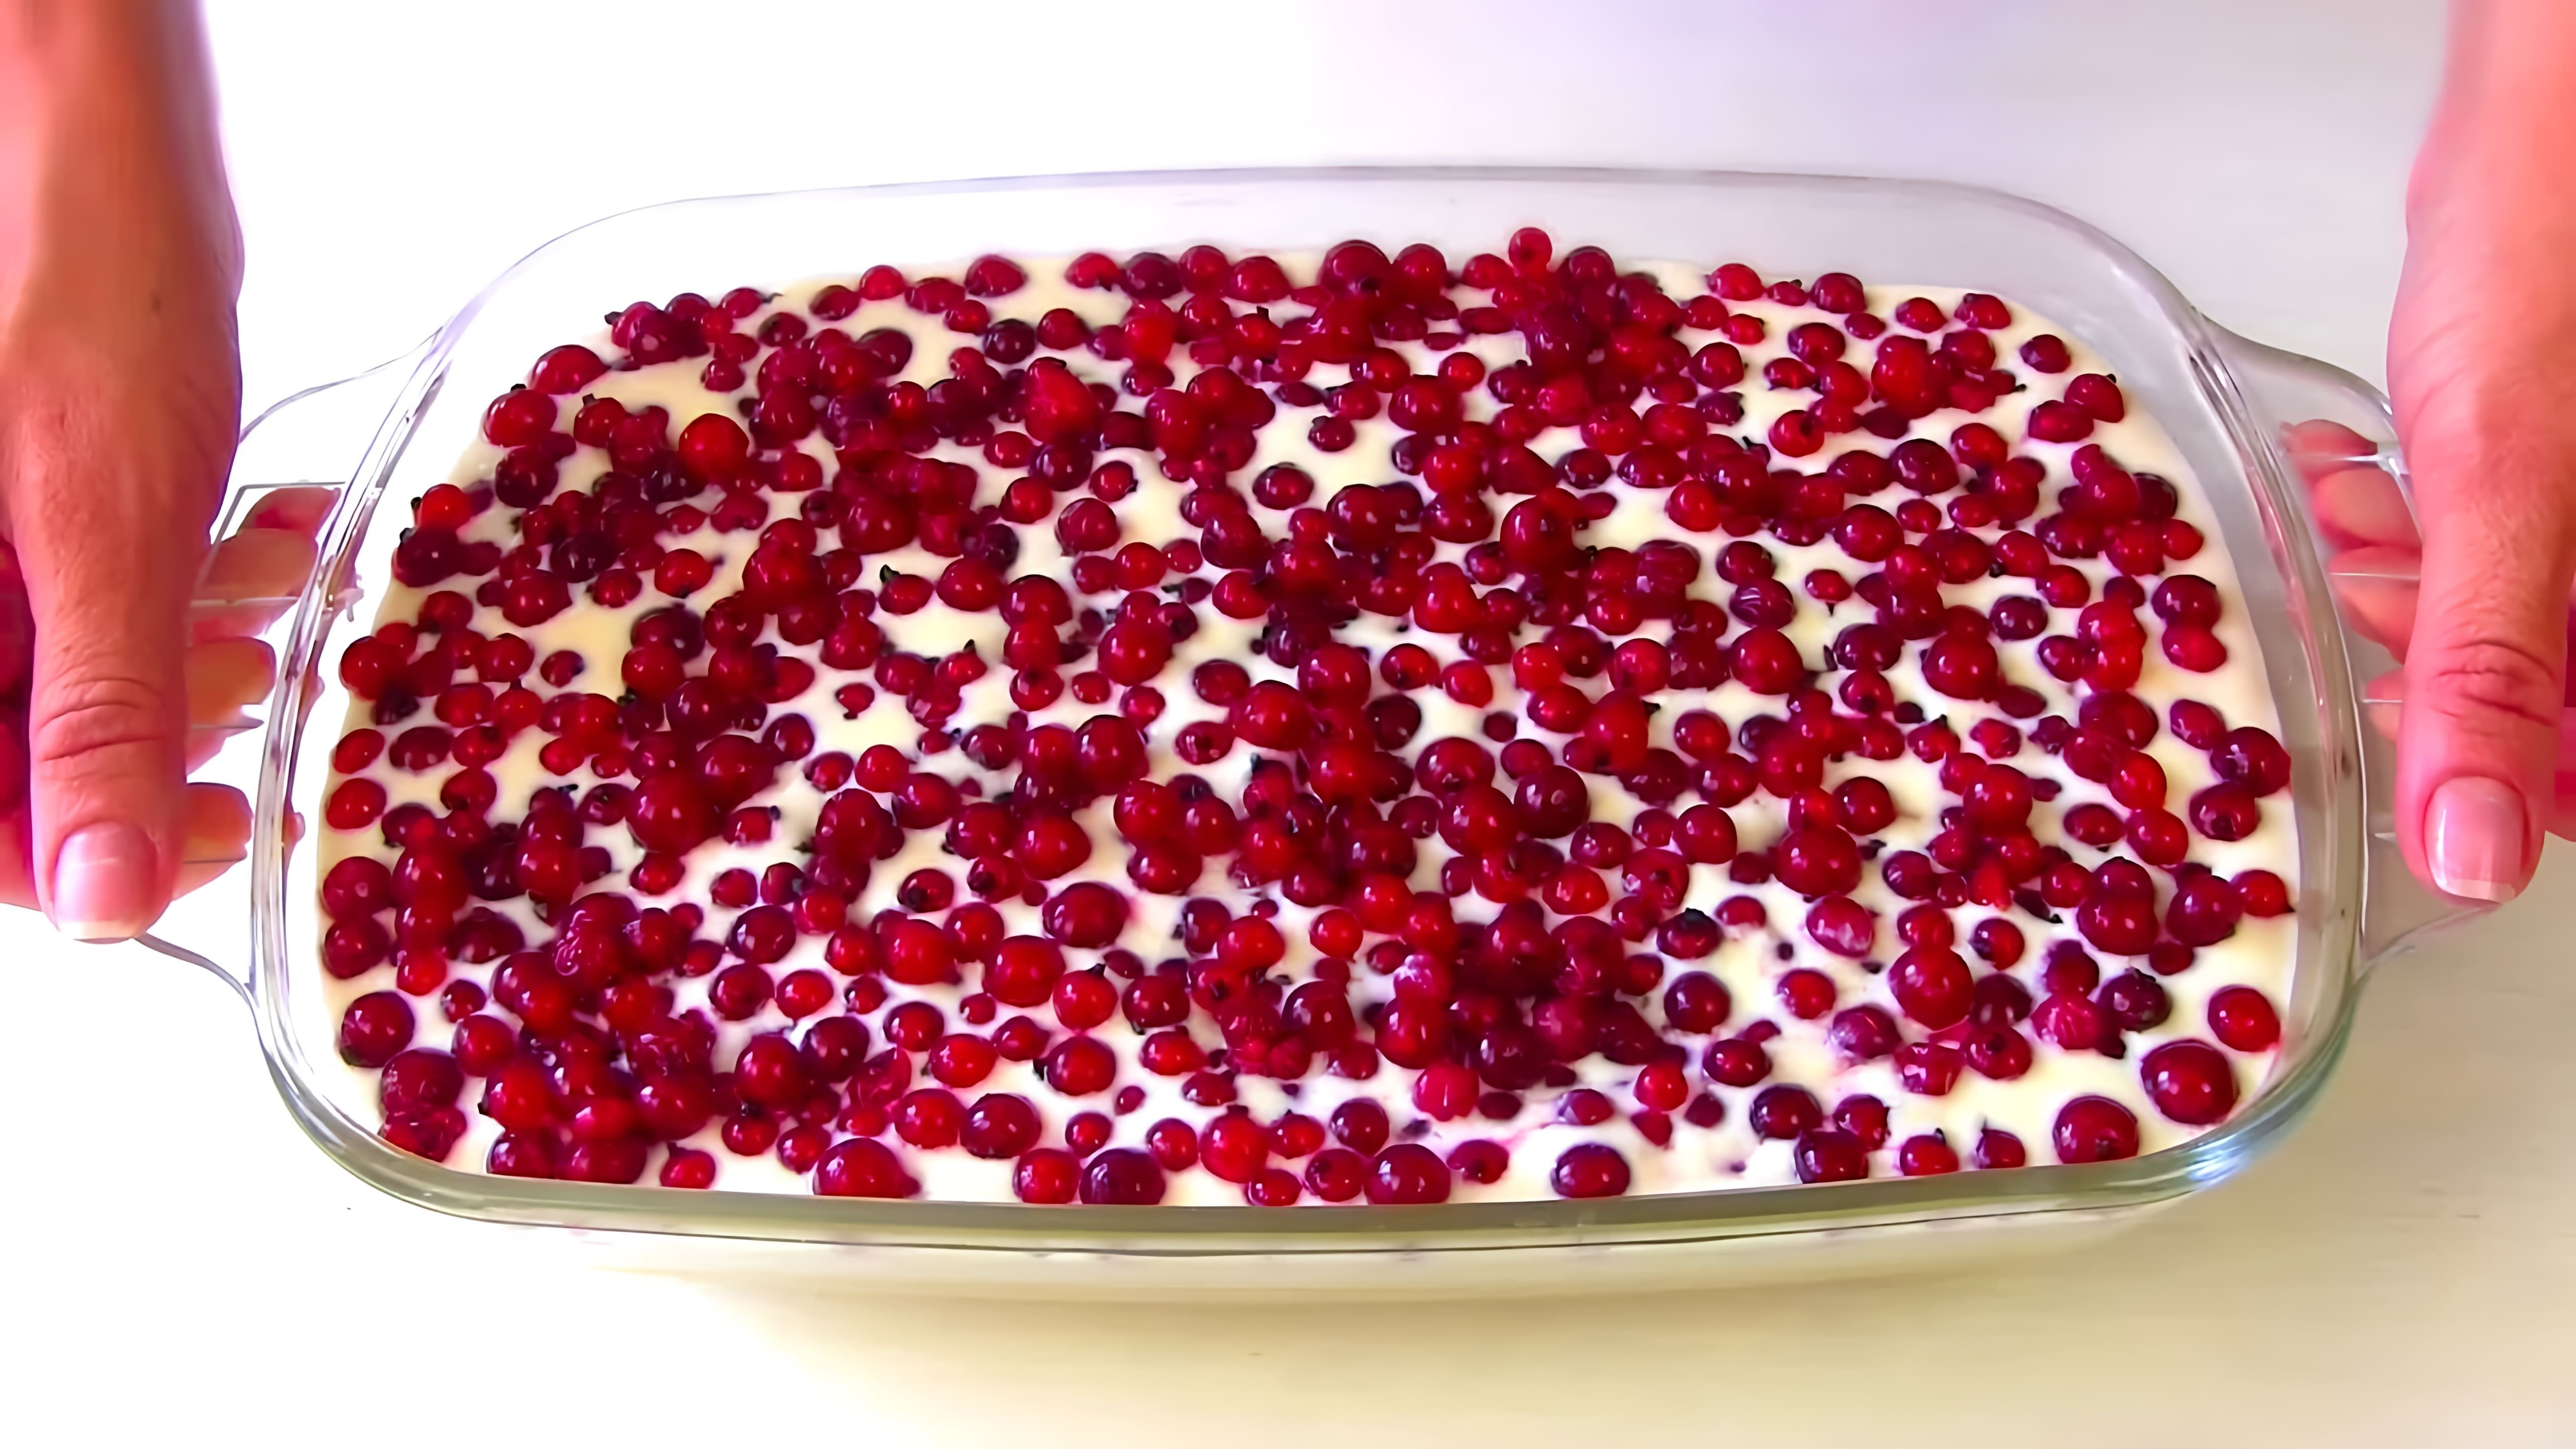 В этом видео демонстрируется процесс приготовления простого и сочного пирога с ягодами